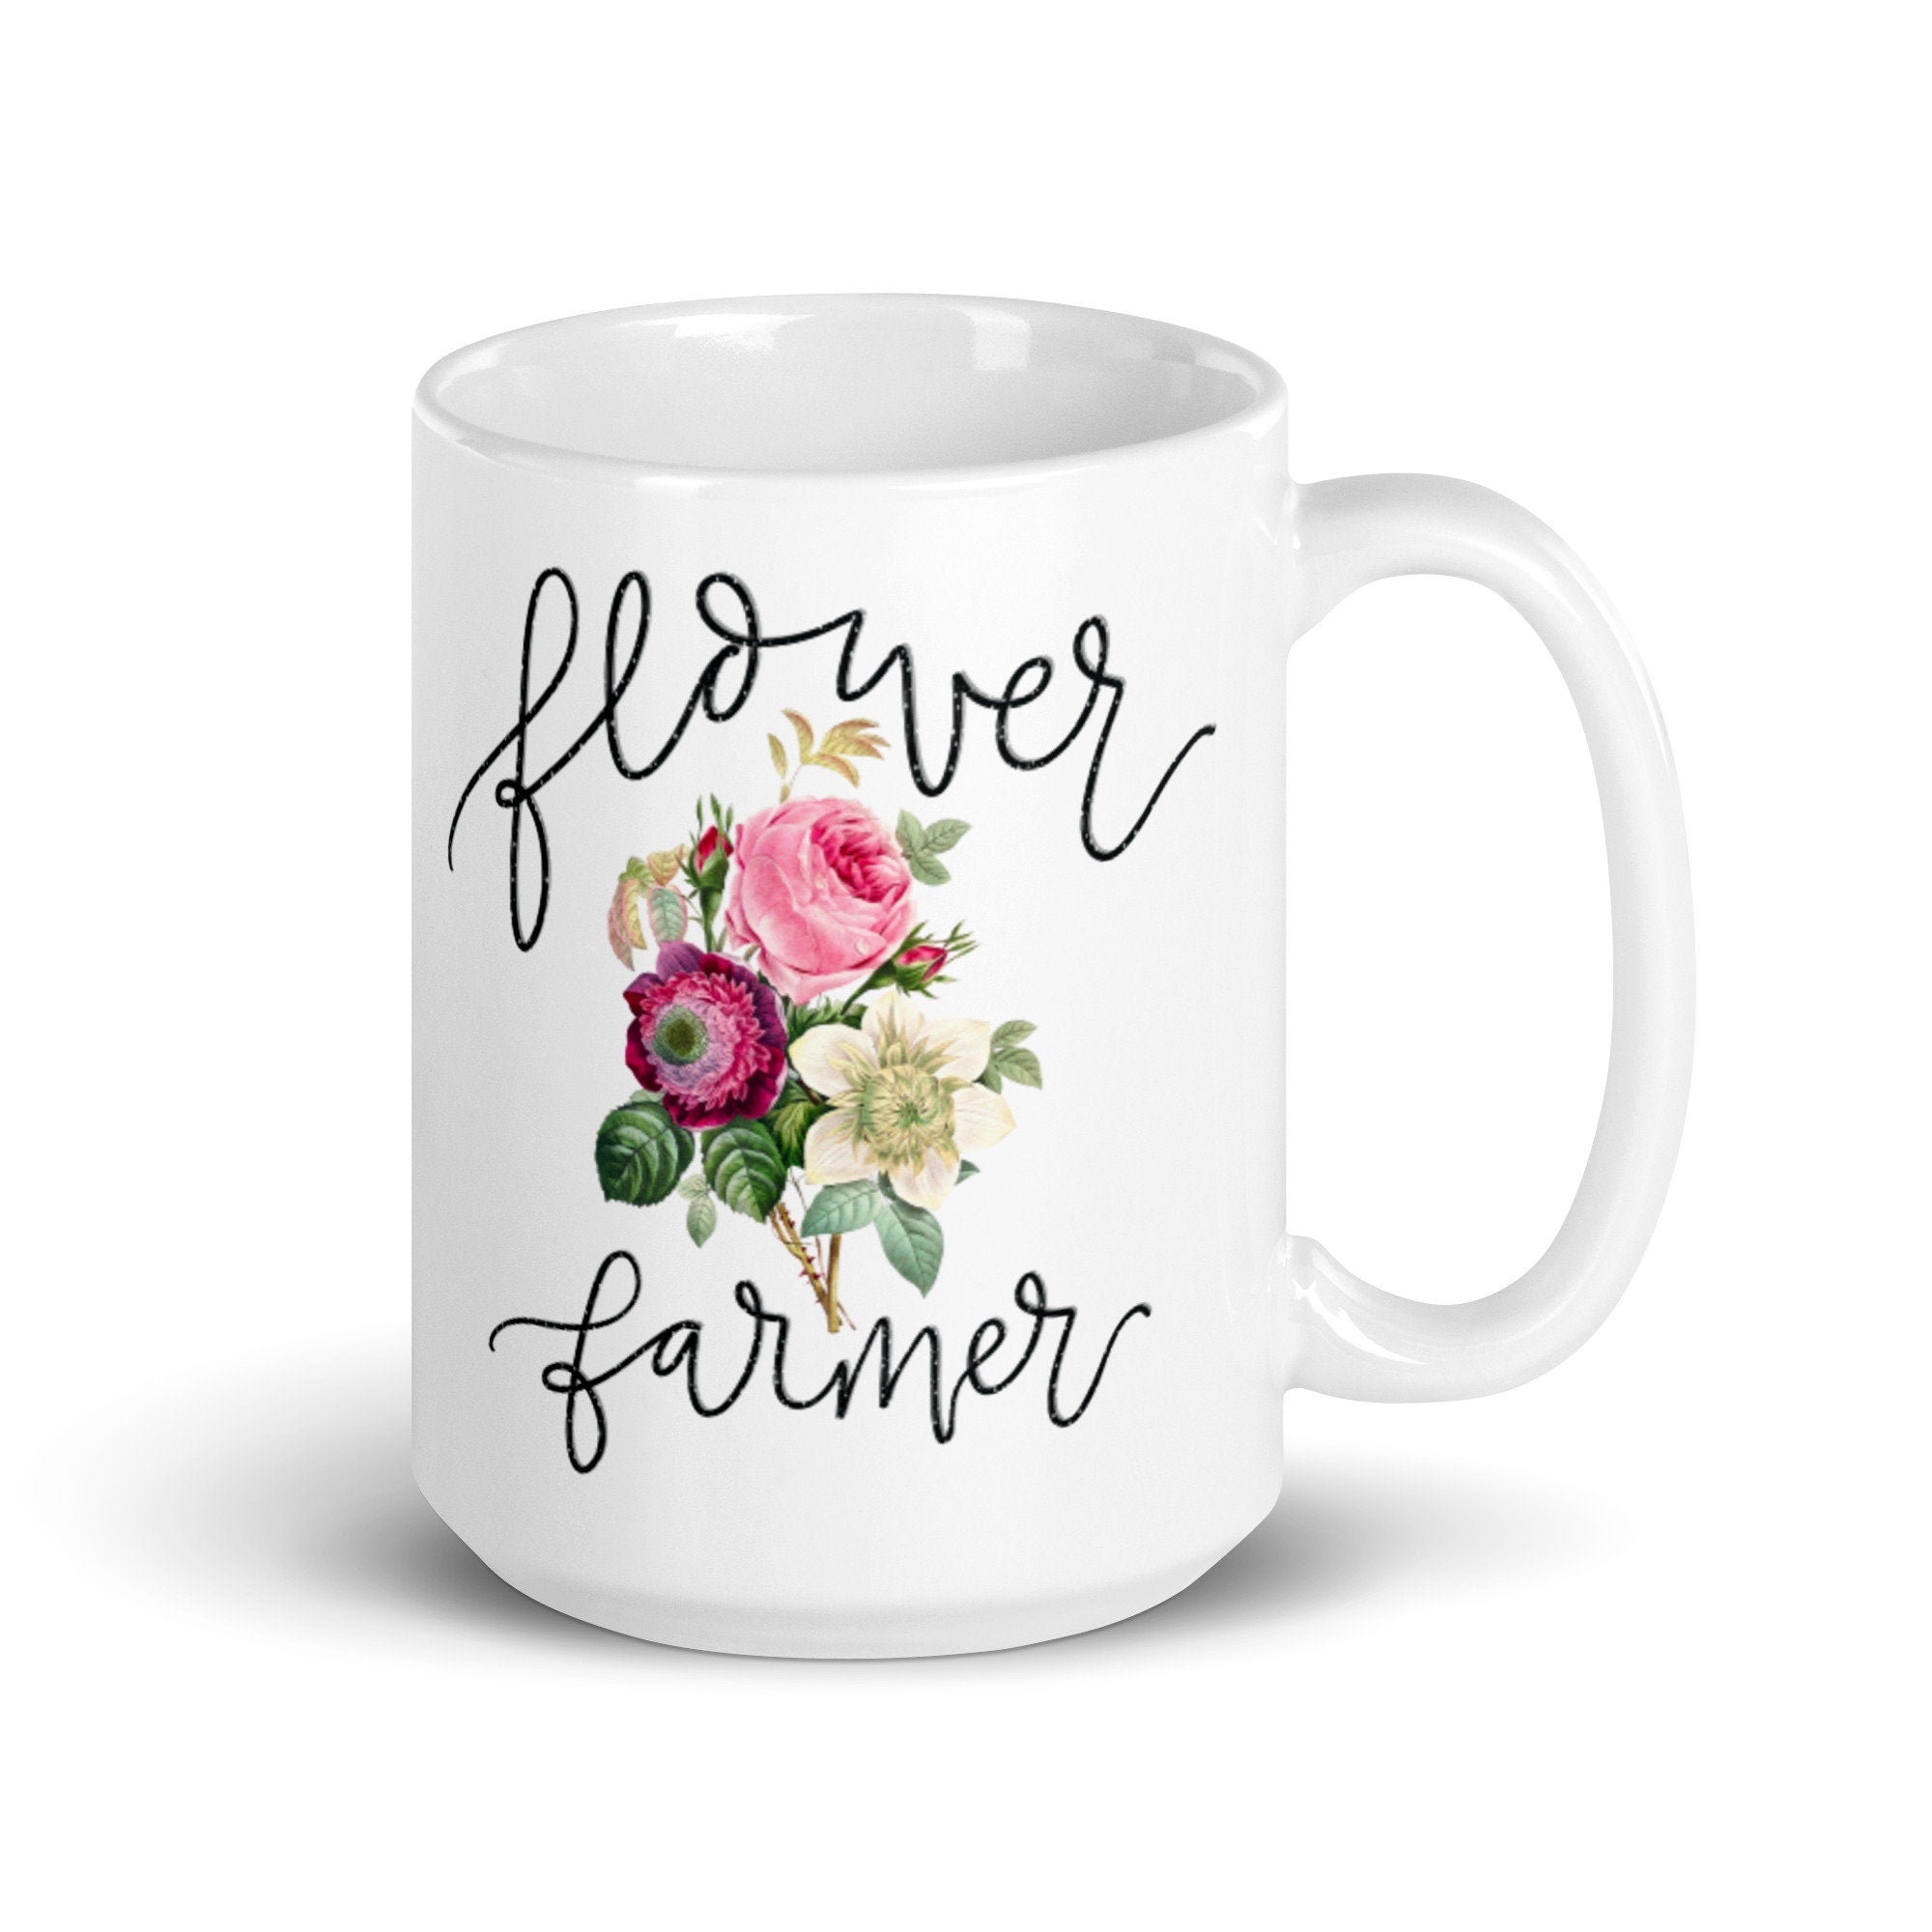 Flower Farmer Gift Idea Mug For Gardening Lover - Garden Themed Coffee Lover Present - Flower and Tea lover Redoute Artist  Bouquet gift